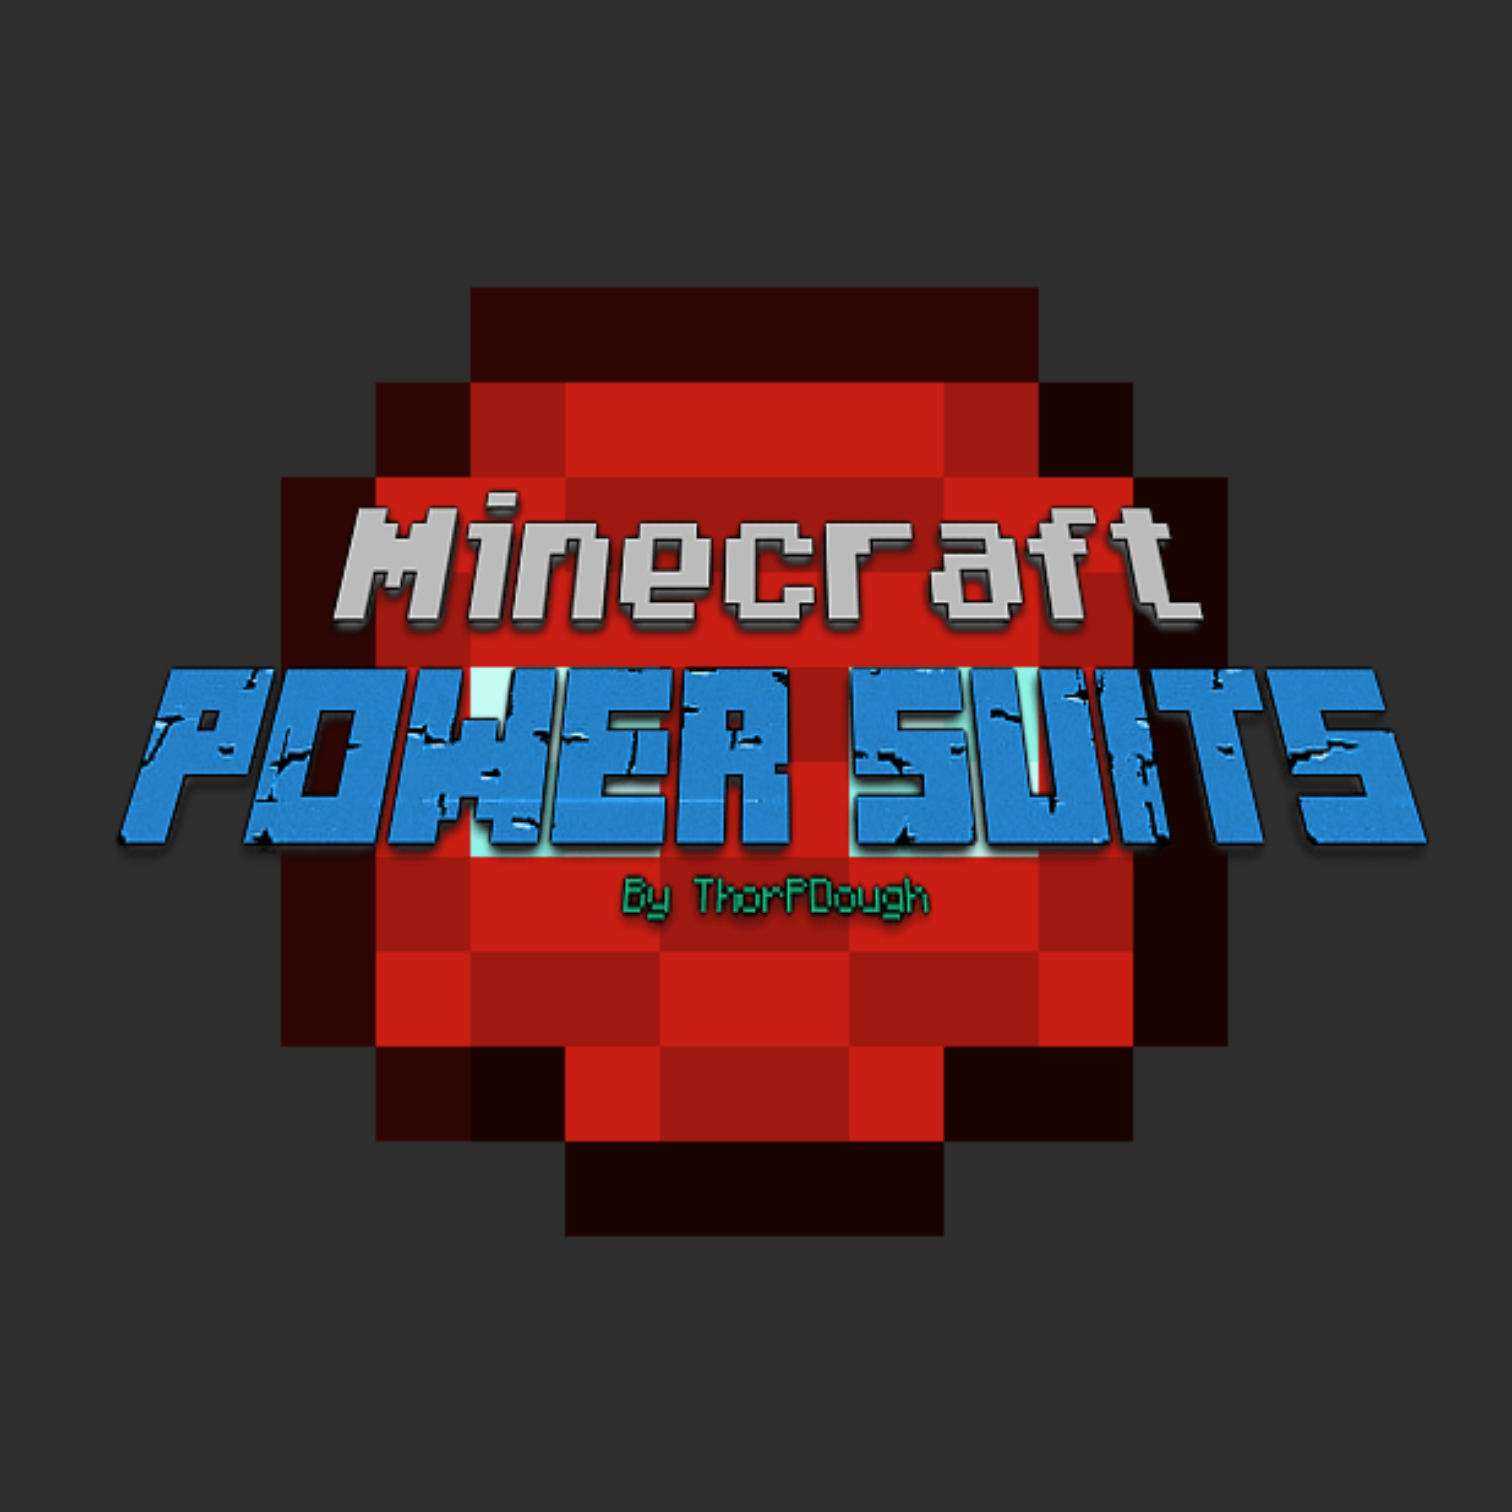 Minecraft power. Power майнкрафт. Мод Power. Power Suit Minecraft. Fresh Powered майнкрафт.